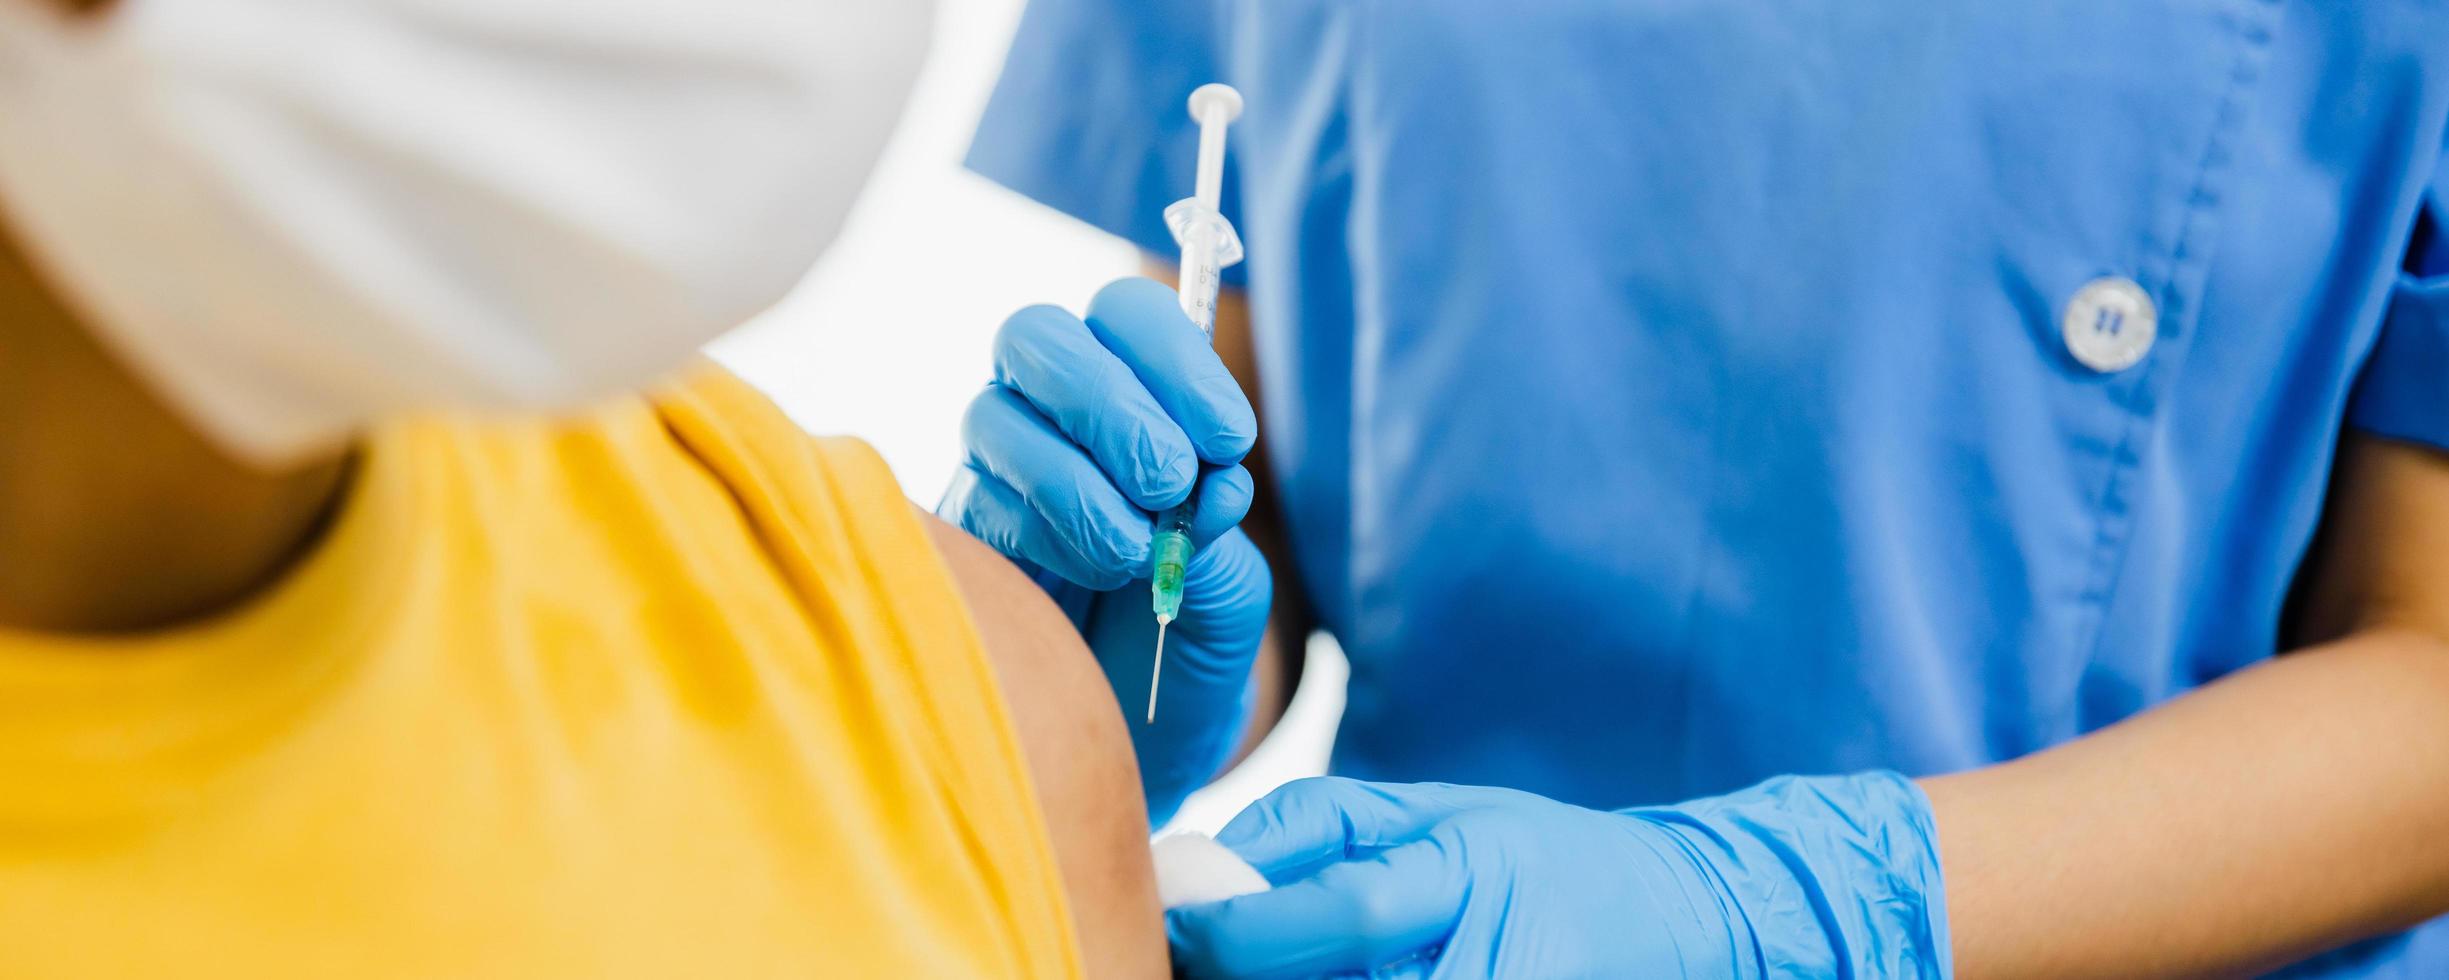 Nahaufnahme der Hand einer Ärztin, die eine Spritze hält und Baumwolle verwendet, bevor sie dem Patienten in einer medizinischen Maske injiziert wird. Covid-19- oder Coronavirus-Impfstoff foto